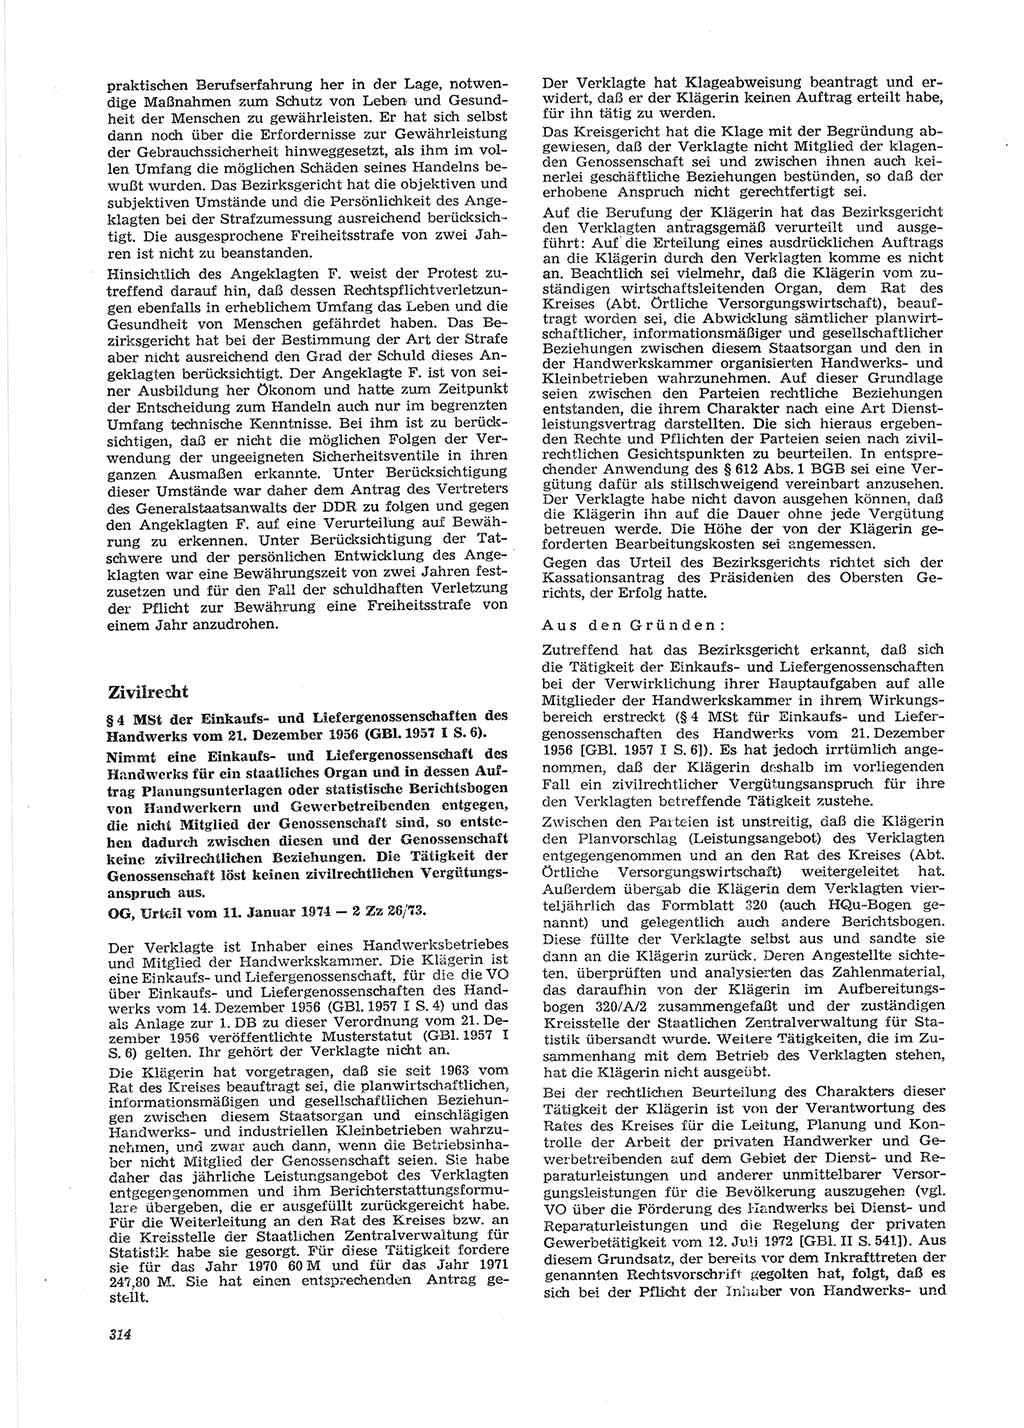 Neue Justiz (NJ), Zeitschrift für Recht und Rechtswissenschaft [Deutsche Demokratische Republik (DDR)], 28. Jahrgang 1974, Seite 314 (NJ DDR 1974, S. 314)